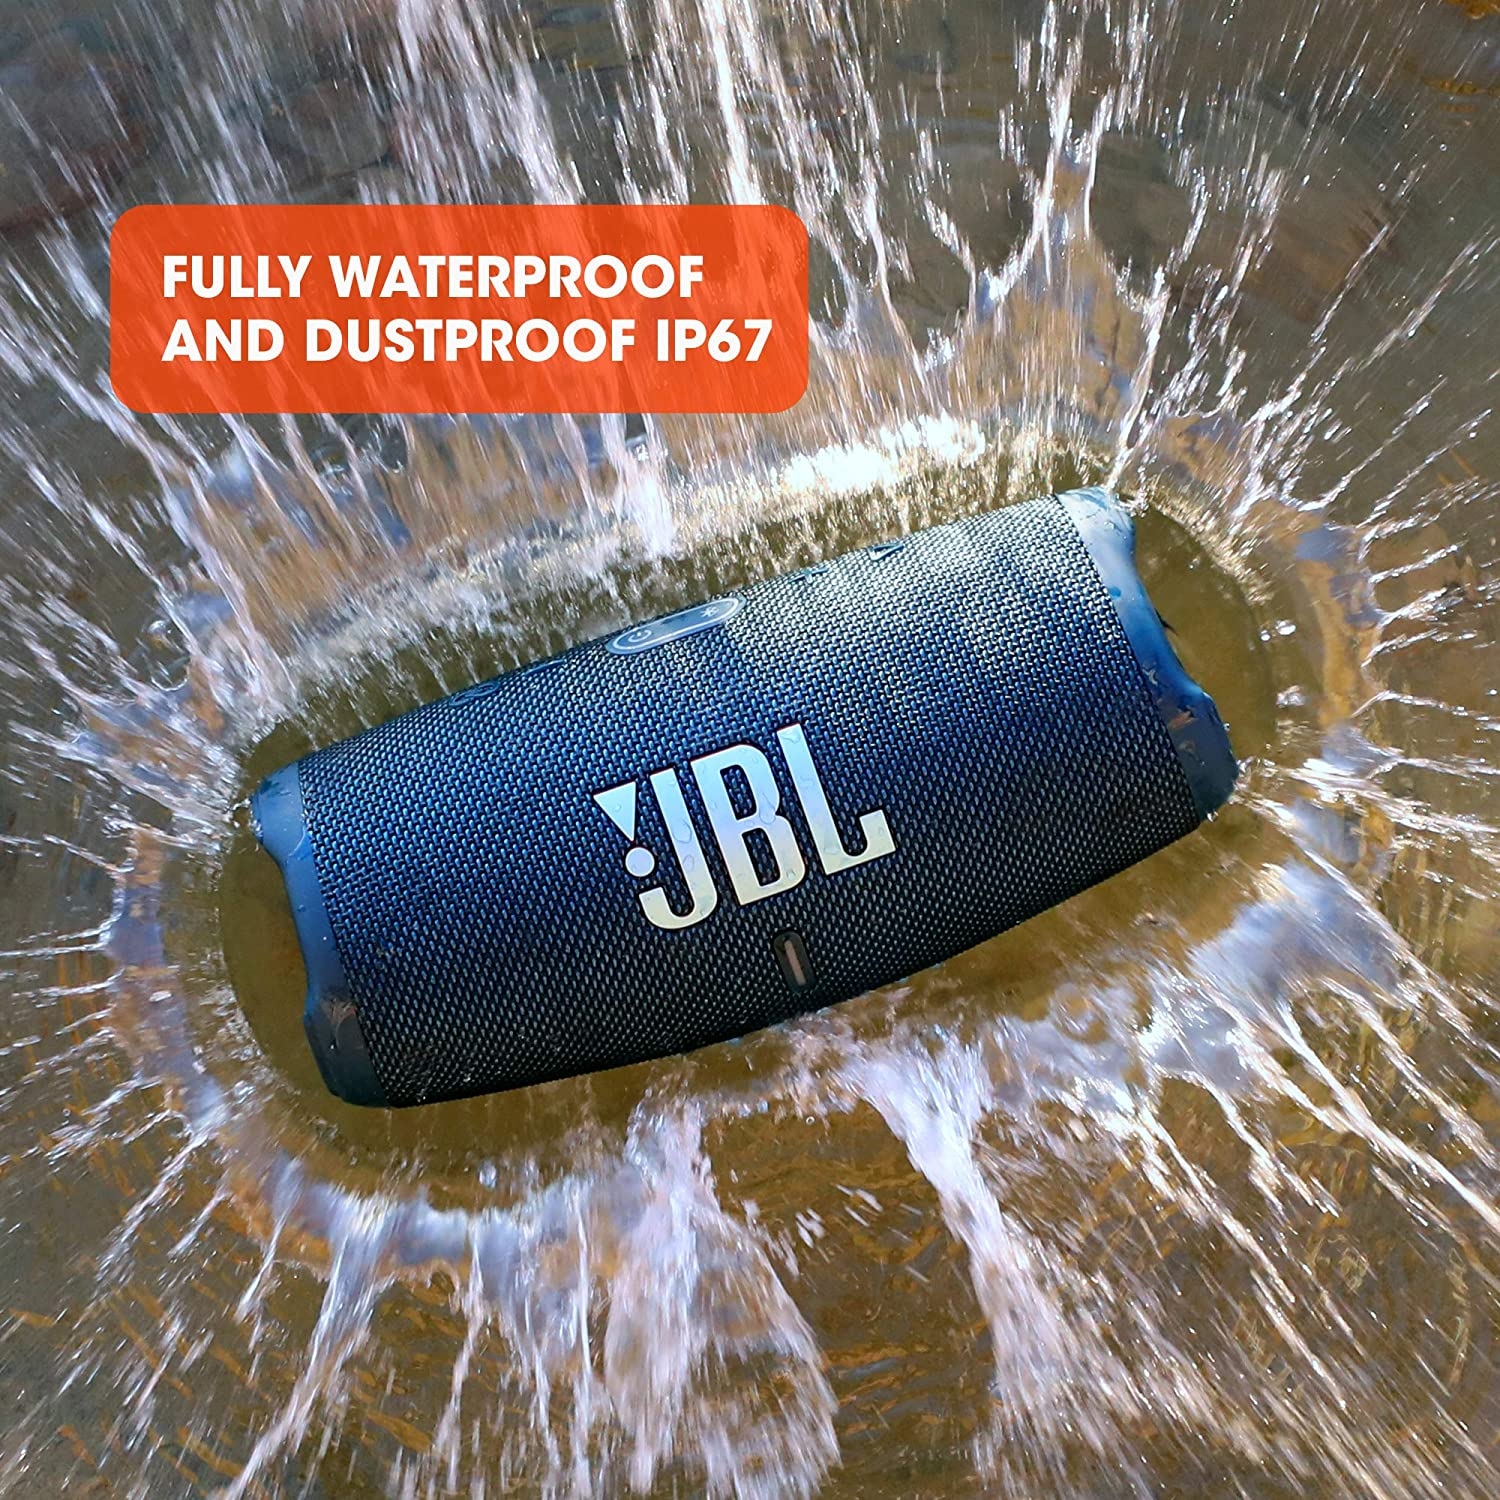 مكبر صوت لاسلكي مقاوم لون رمادي JBL Charge5 Splashproof Portable Bluetooth Speaker - JBL